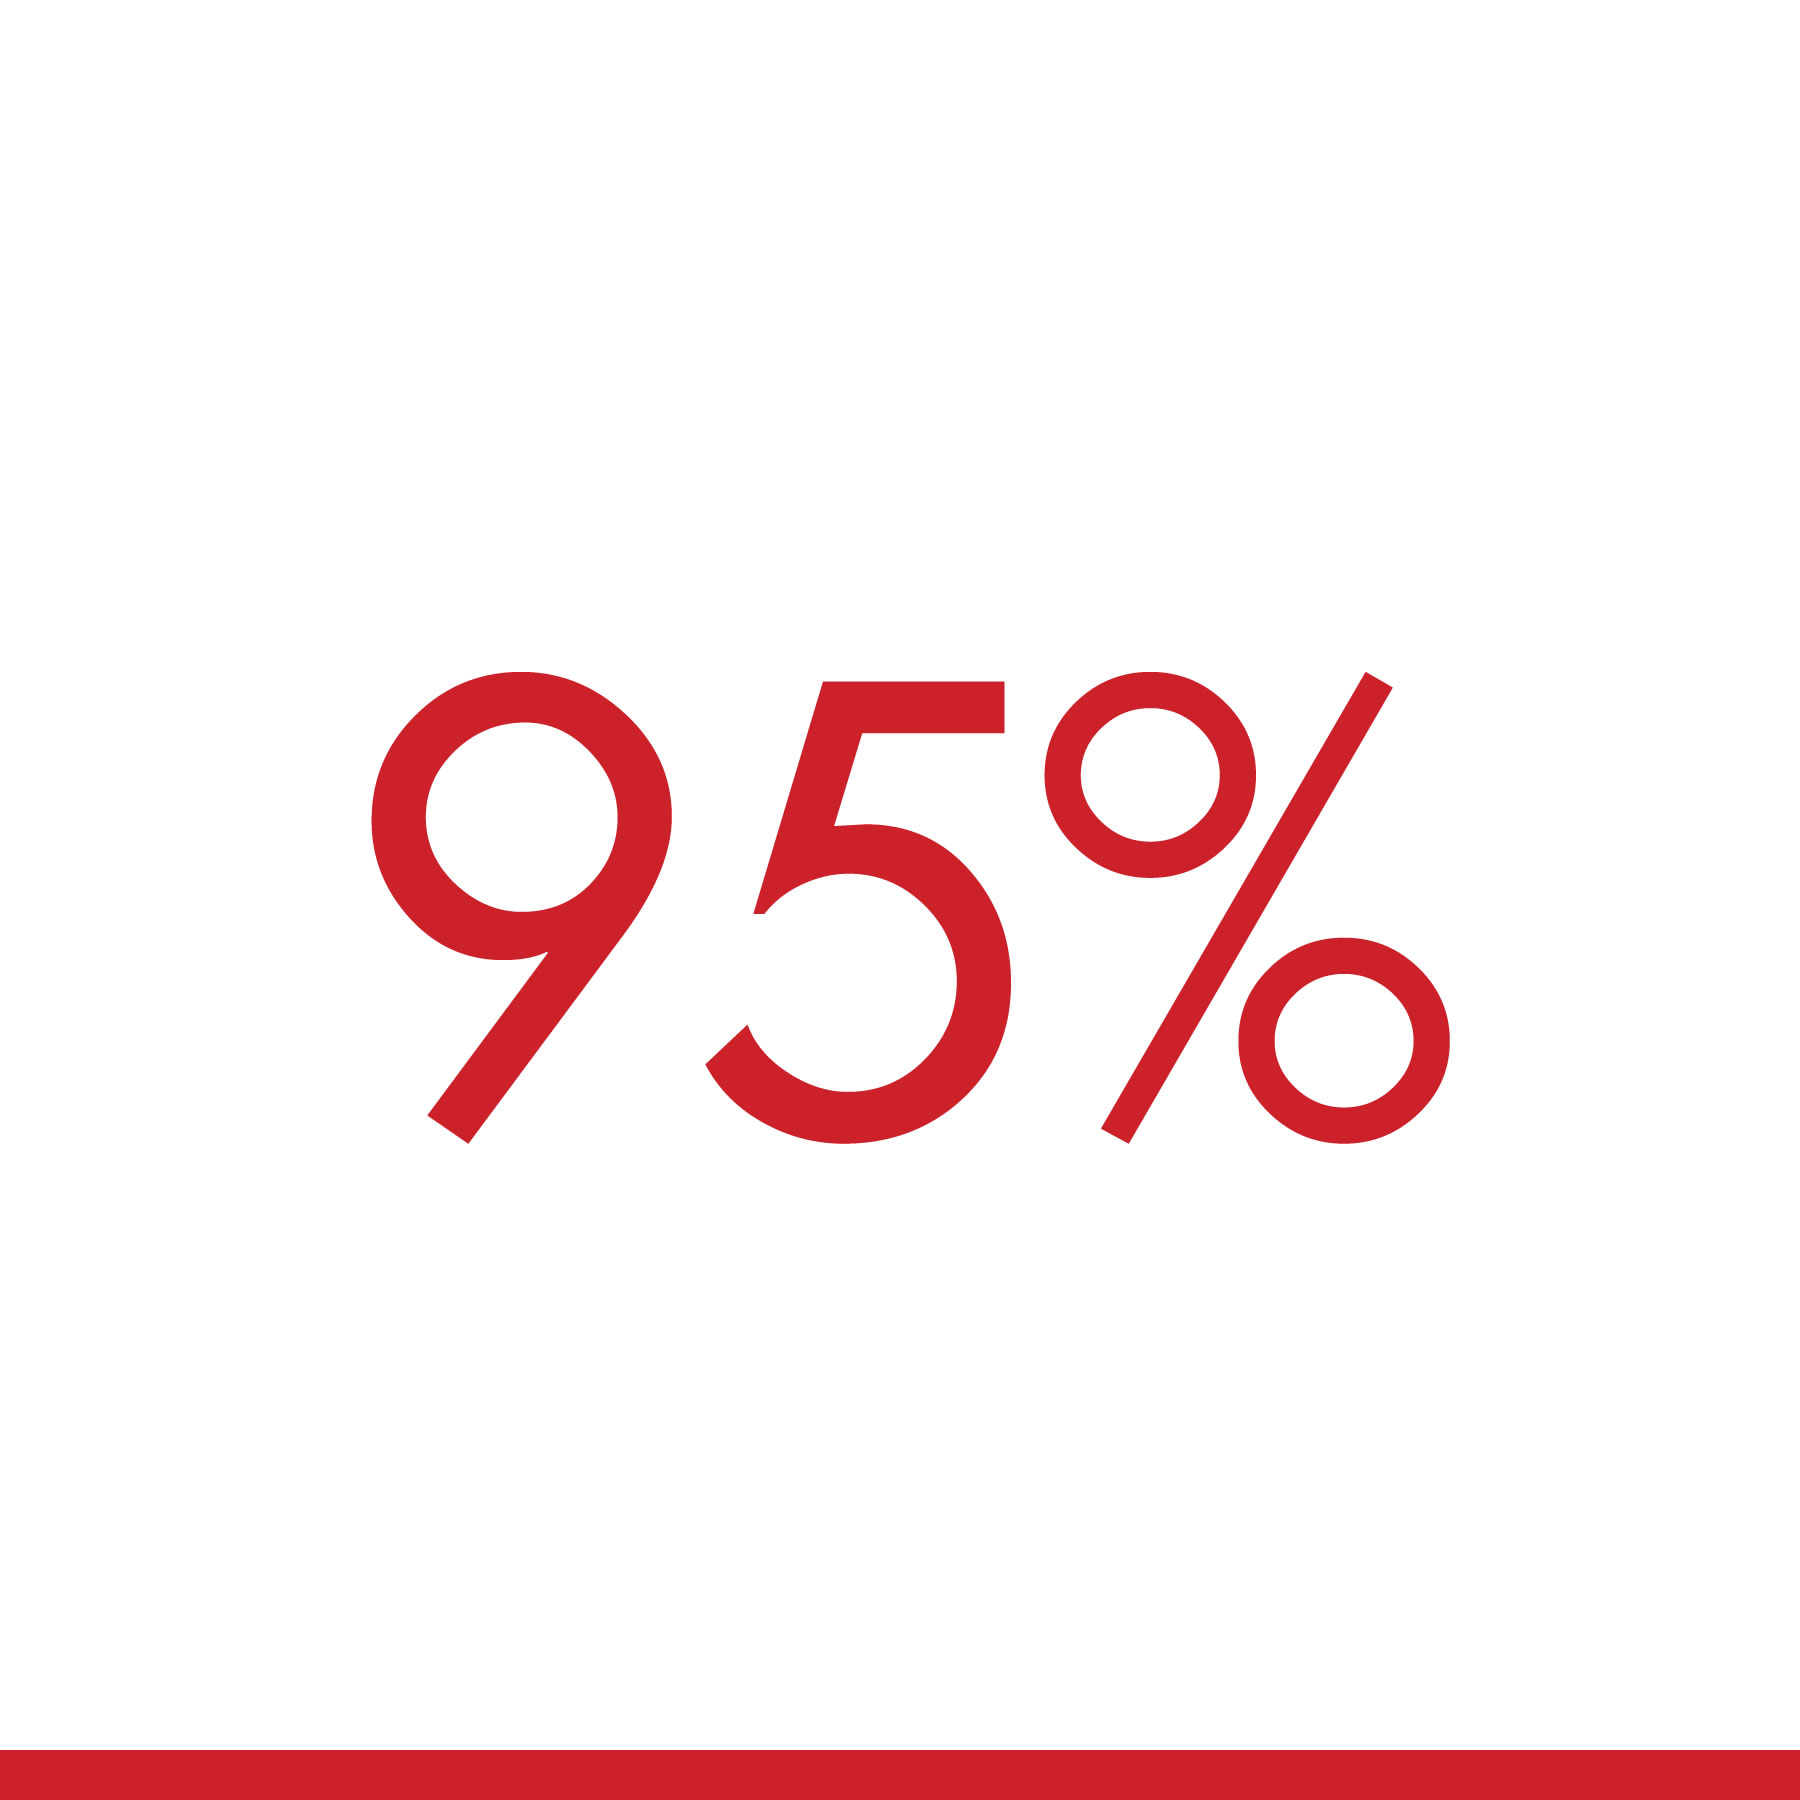 95 Percent